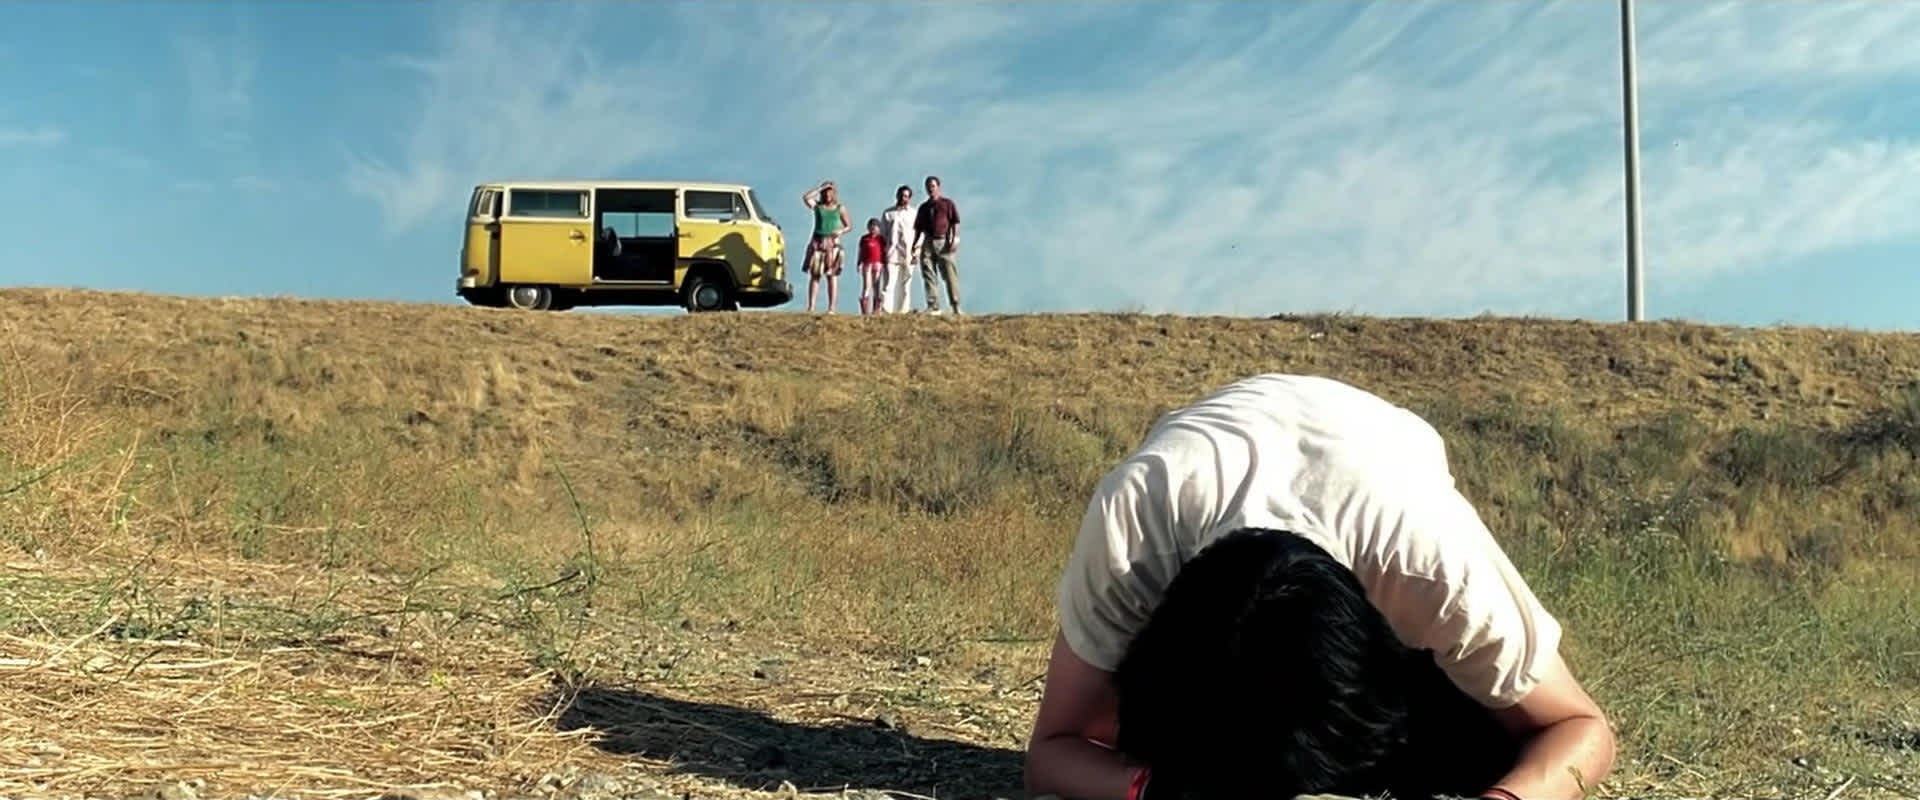 Sceneggiatura Little Miss Sunshine: Pagina uno - Frame del film